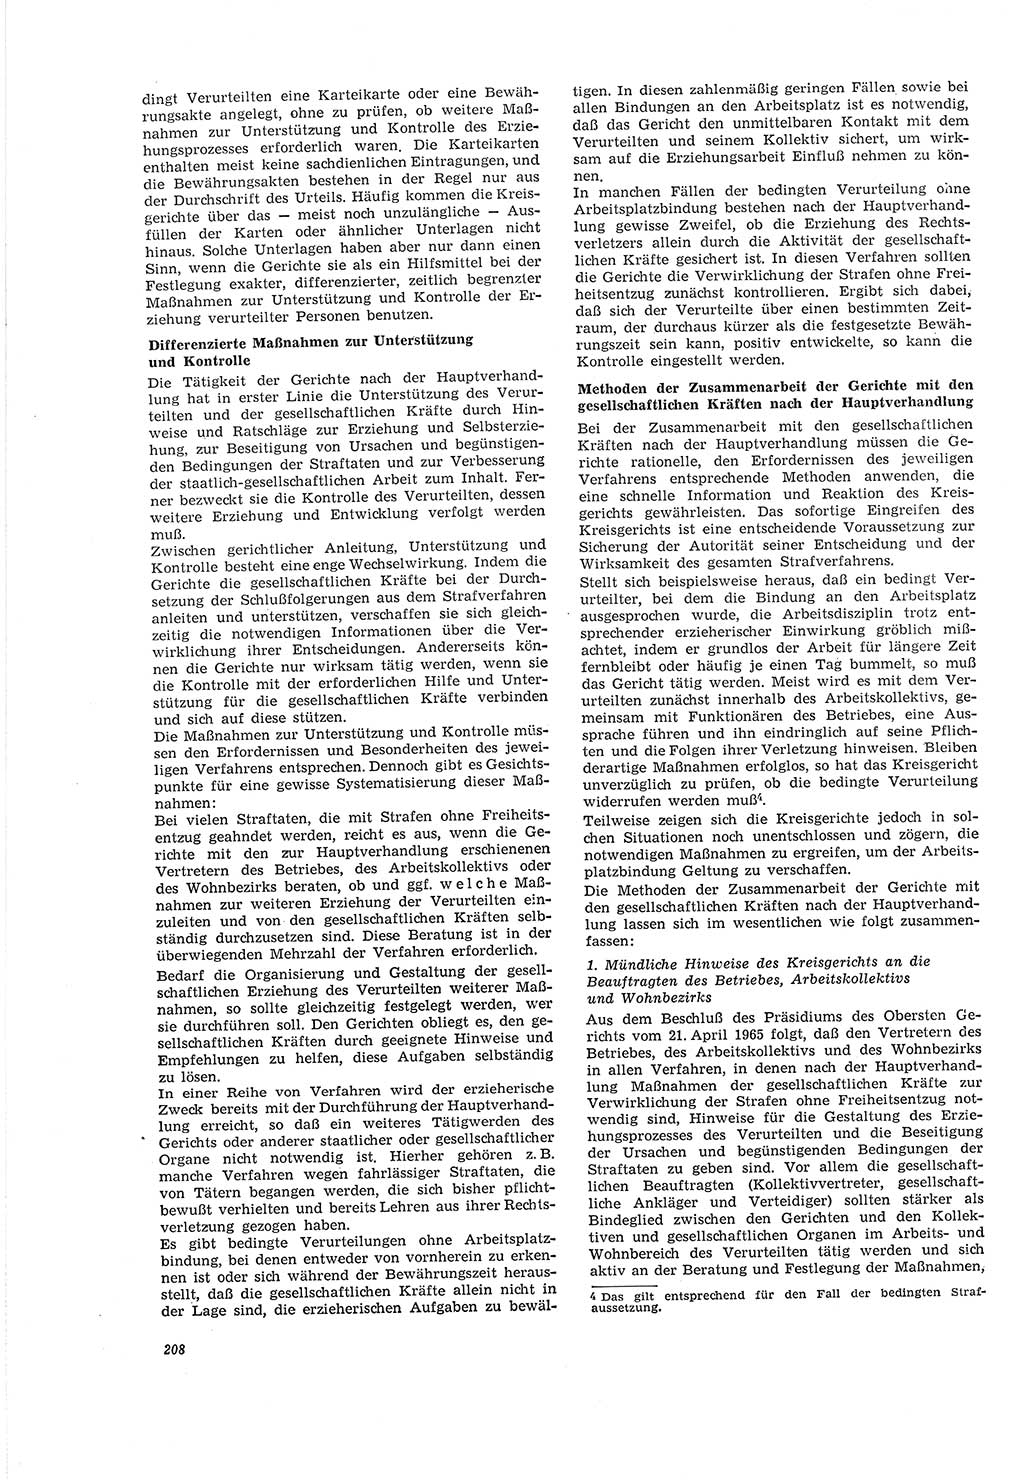 Neue Justiz (NJ), Zeitschrift für Recht und Rechtswissenschaft [Deutsche Demokratische Republik (DDR)], 20. Jahrgang 1966, Seite 208 (NJ DDR 1966, S. 208)